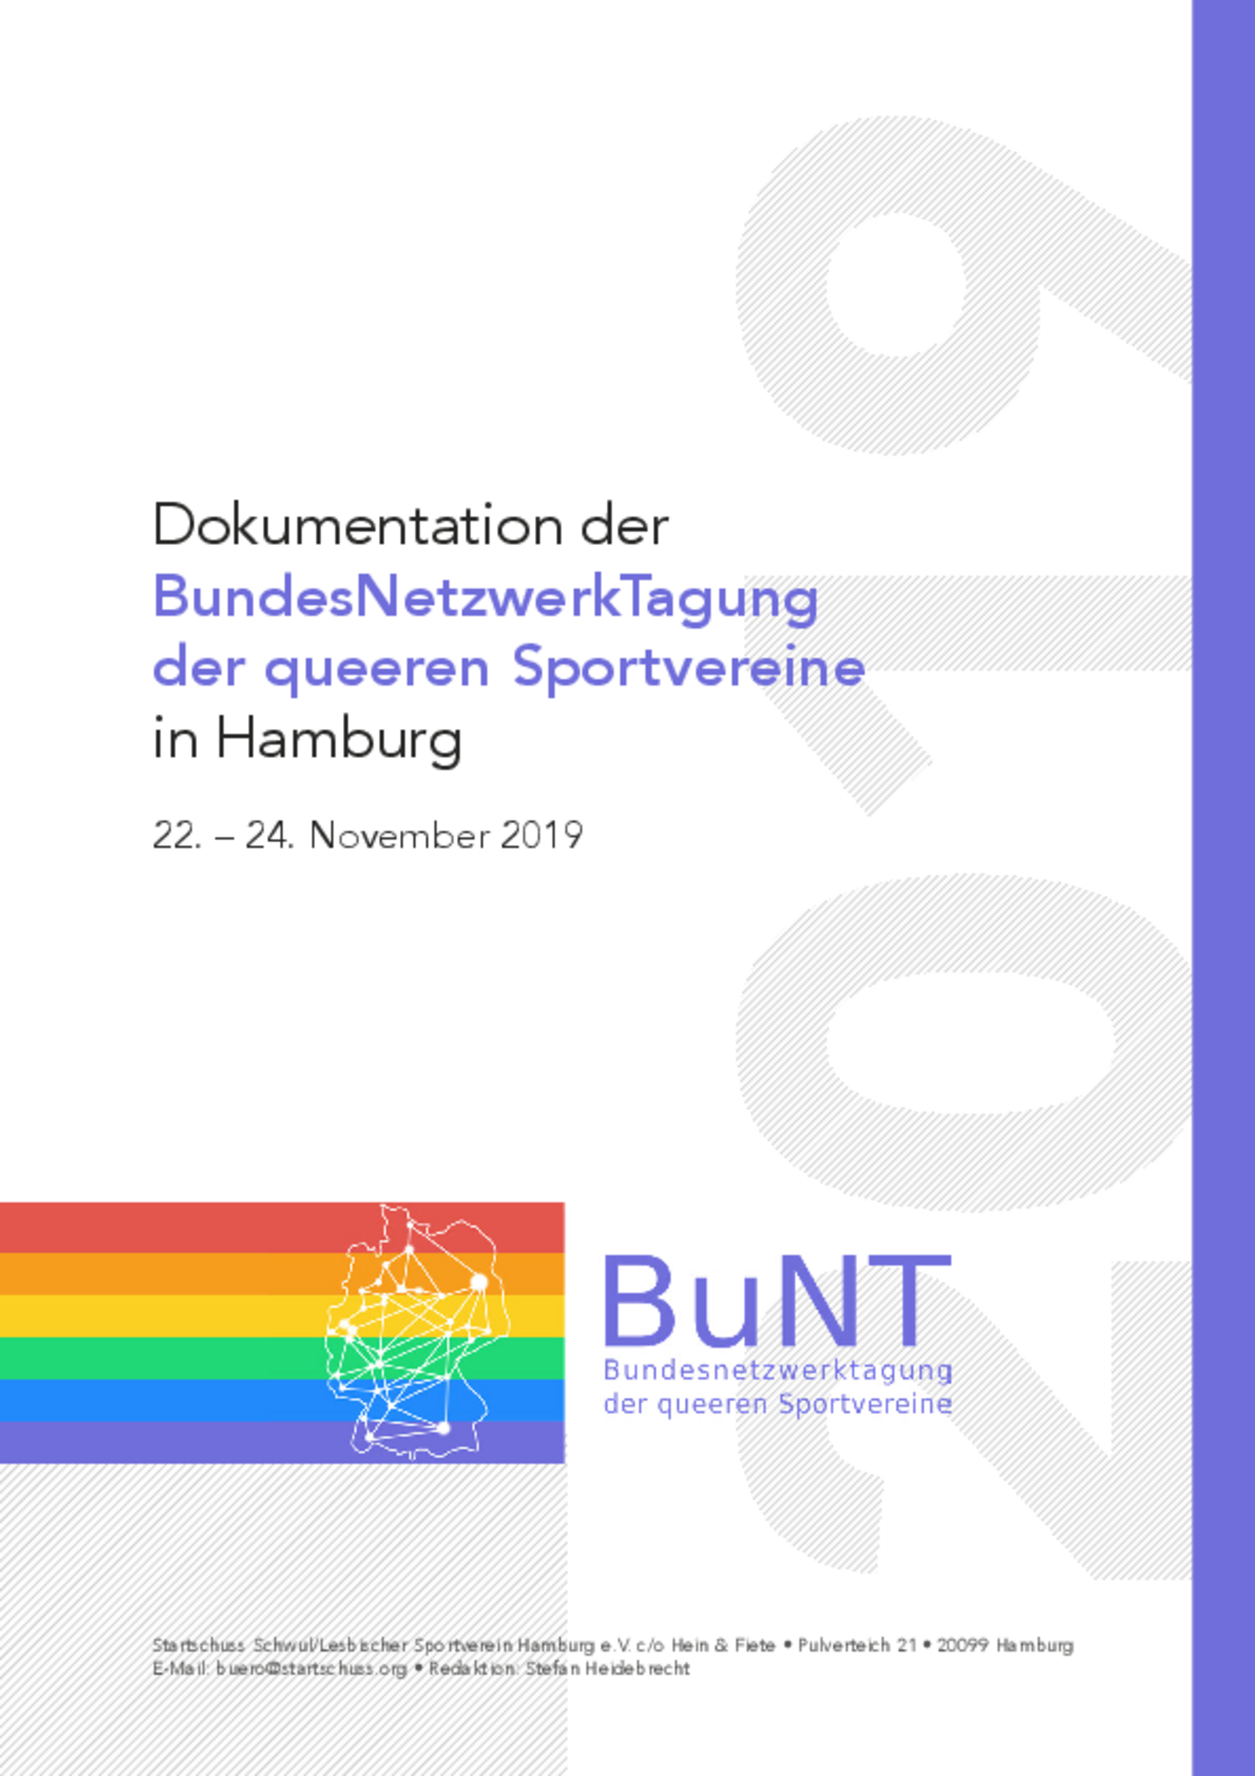 Titelseite der Dokumentation der BundesNetzwerkTagung des queeren Sports 2019